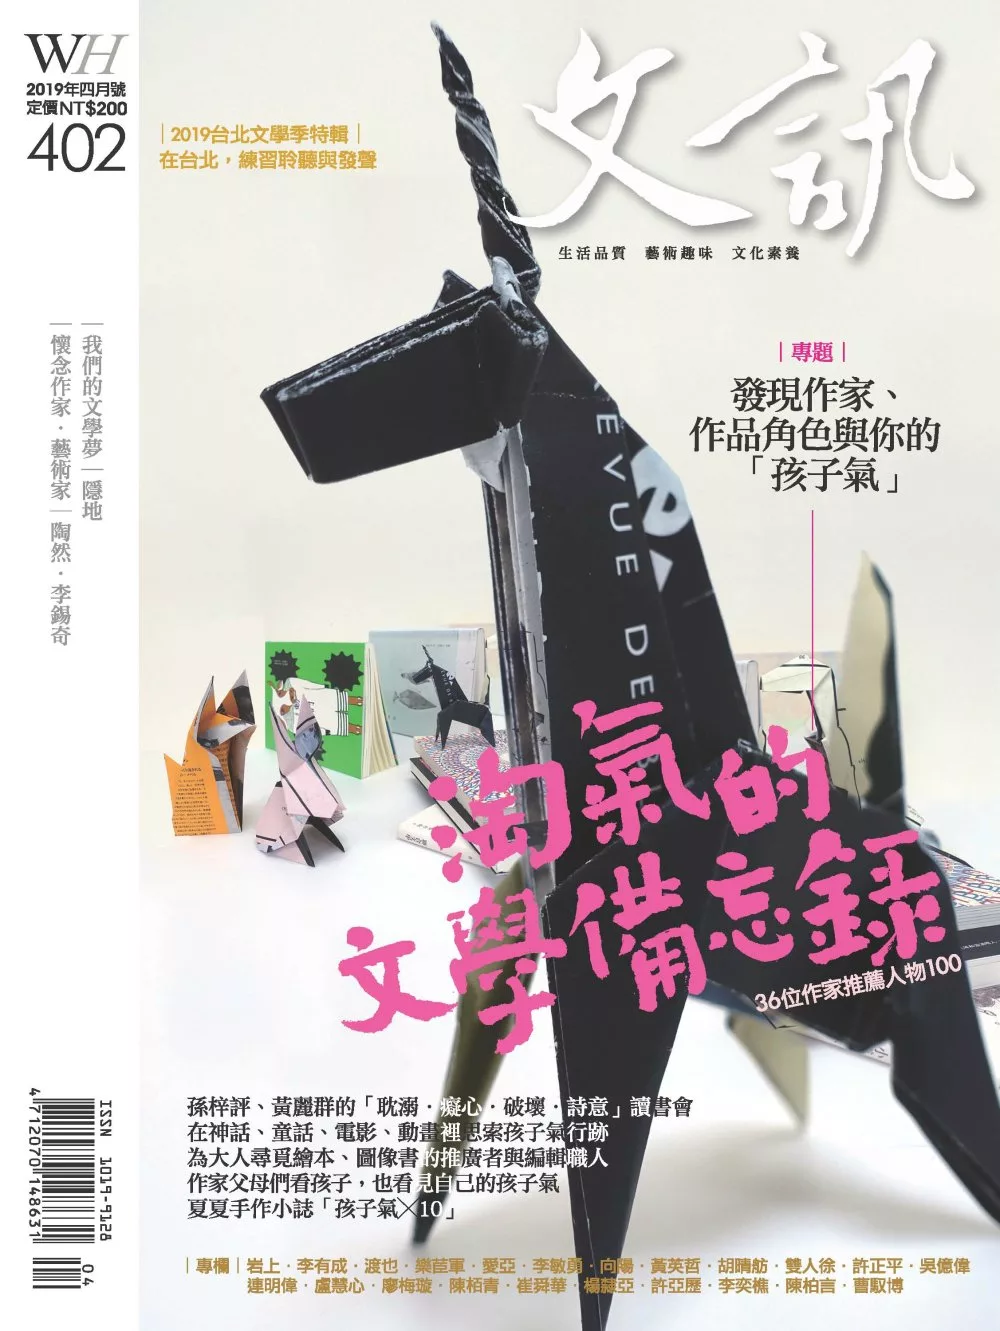 文訊 4月號/2019第402期 (電子雜誌)